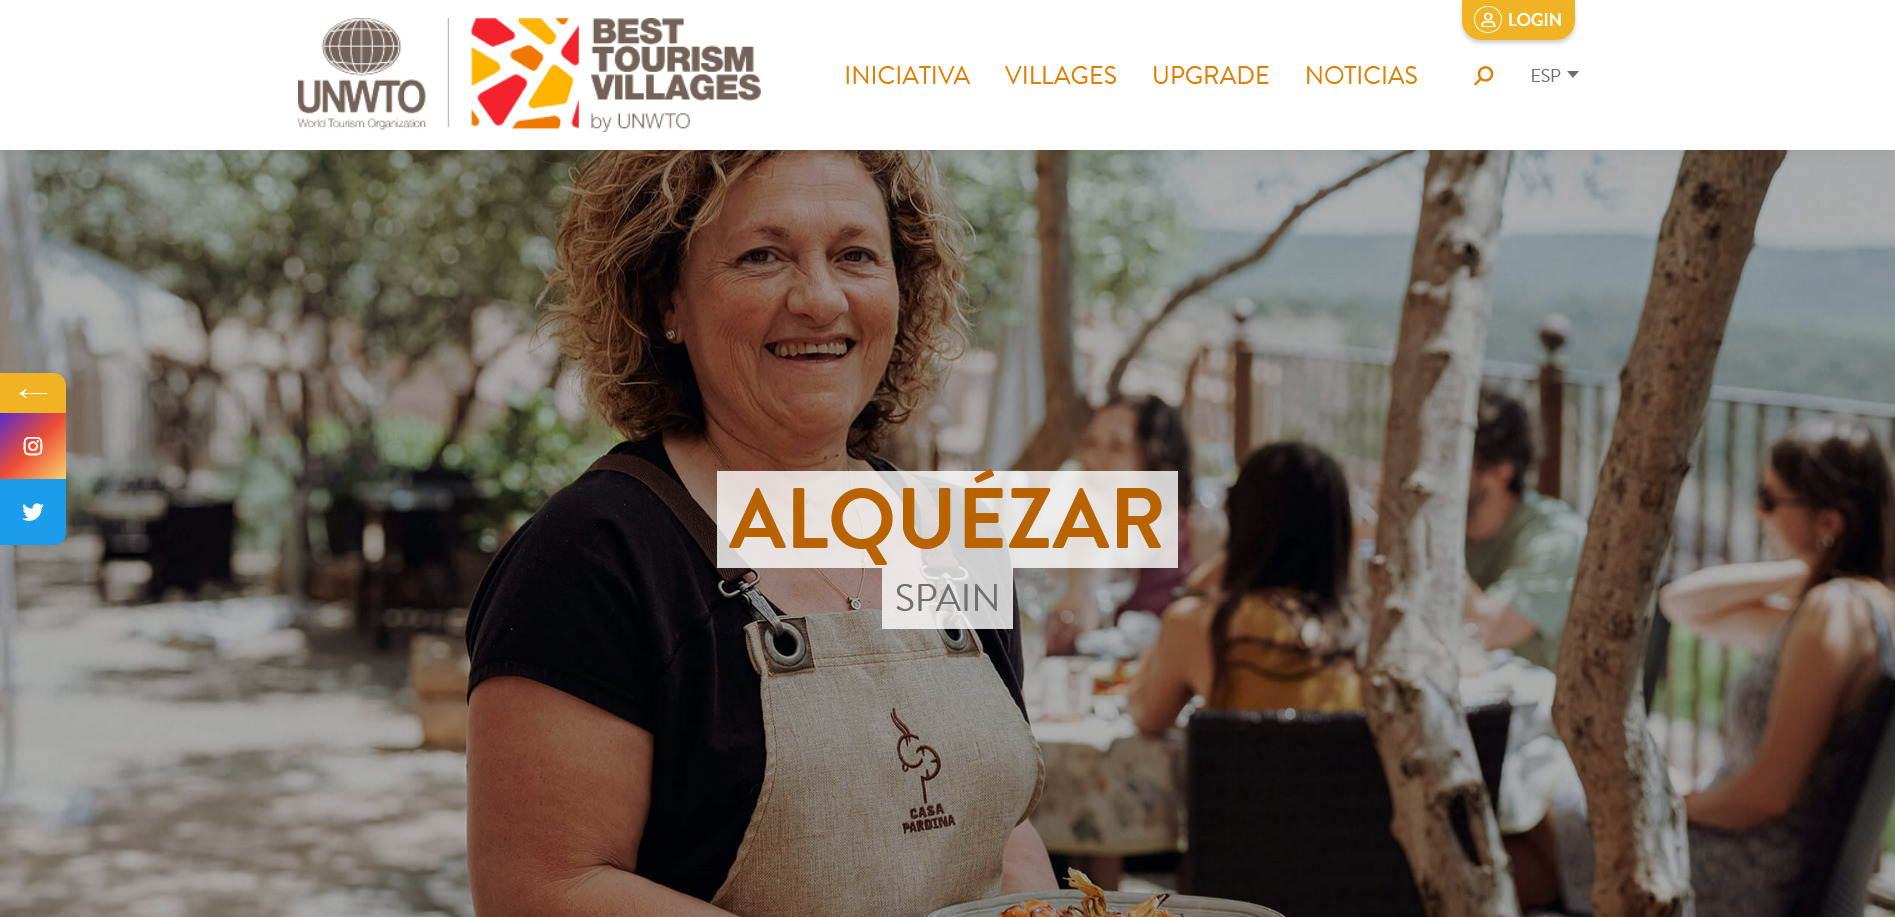 Ana Blasco, la sonrisa de uno de los pueblos uno de los “32 mejores pueblos turísticos” del mundo